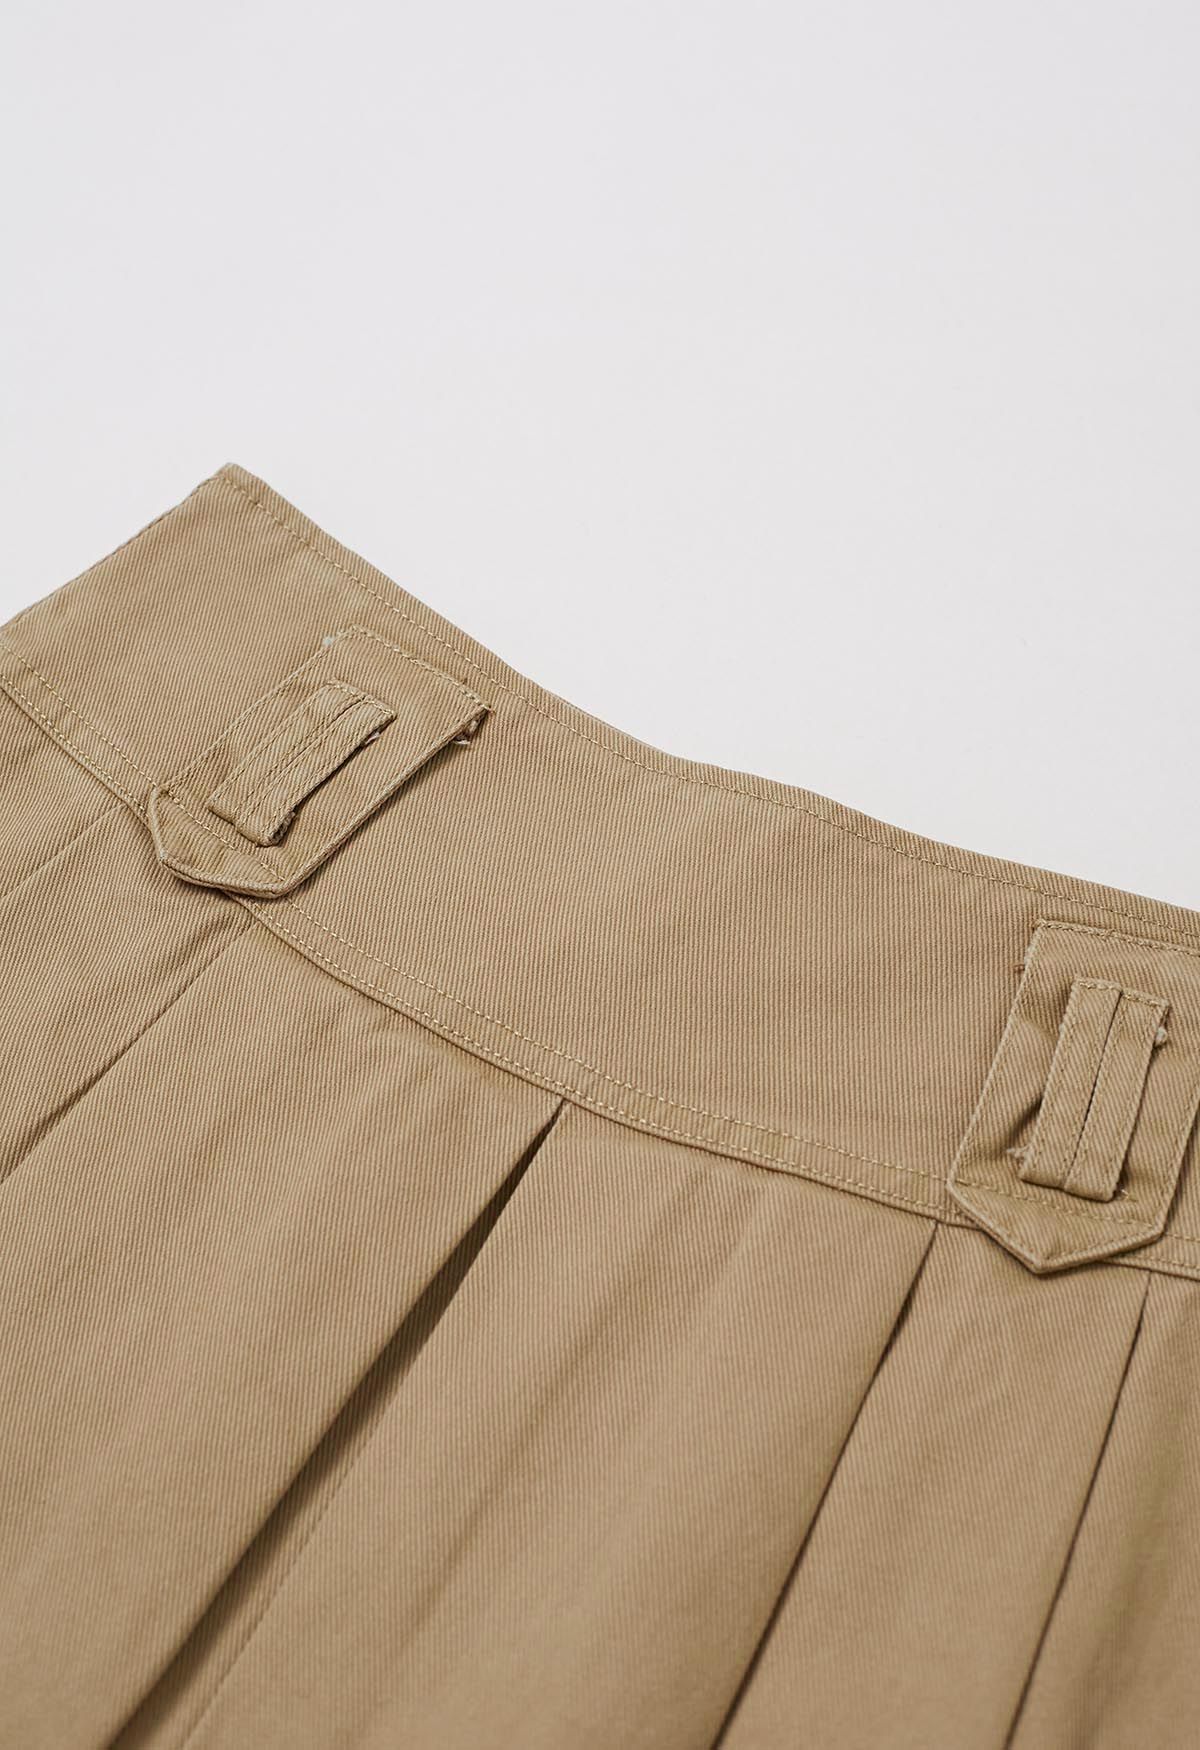 Minifalda vaquera plisada clásica con cinturón en color canela claro